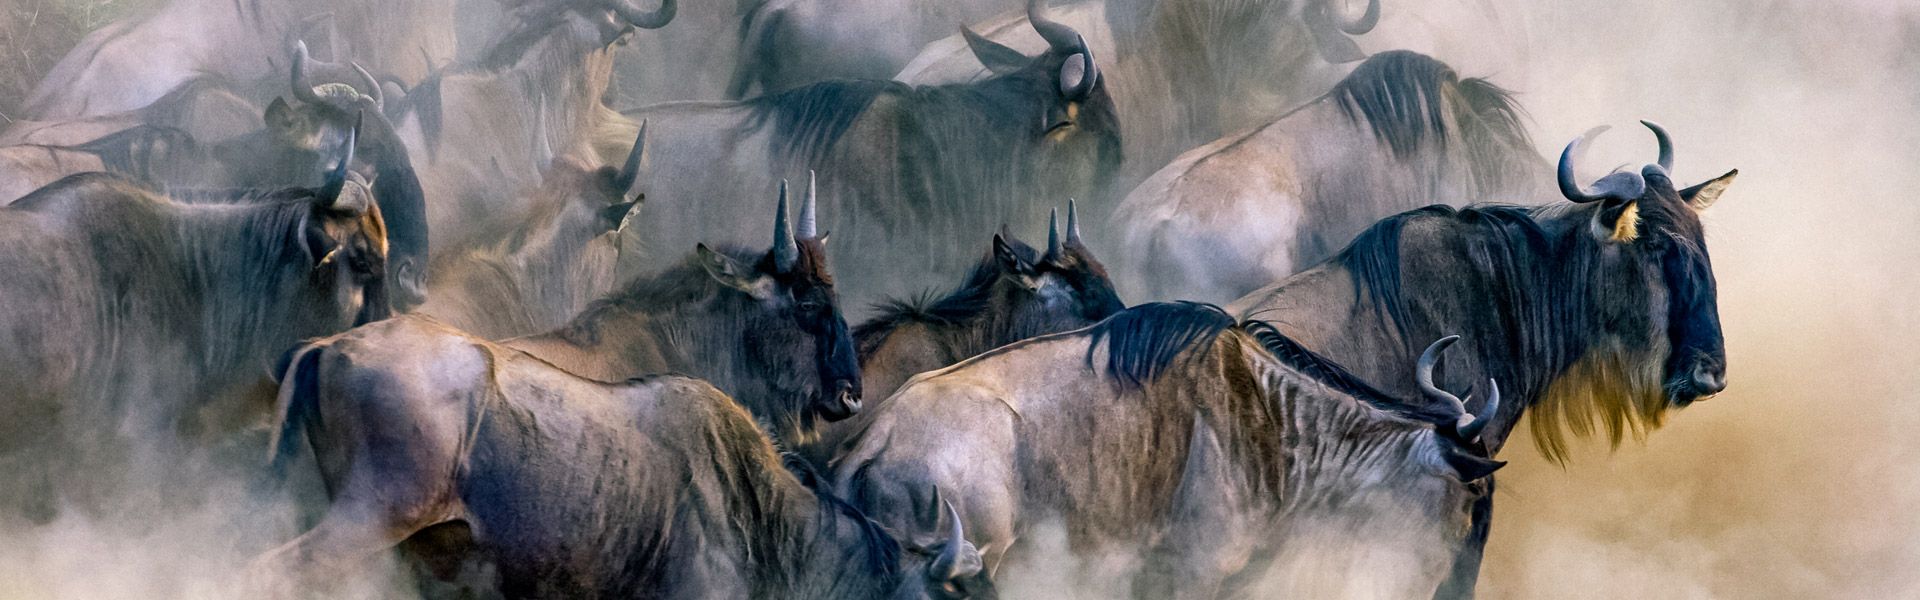 Gnu-Herde |  blacksnapper, iStockphoto / Chamleon